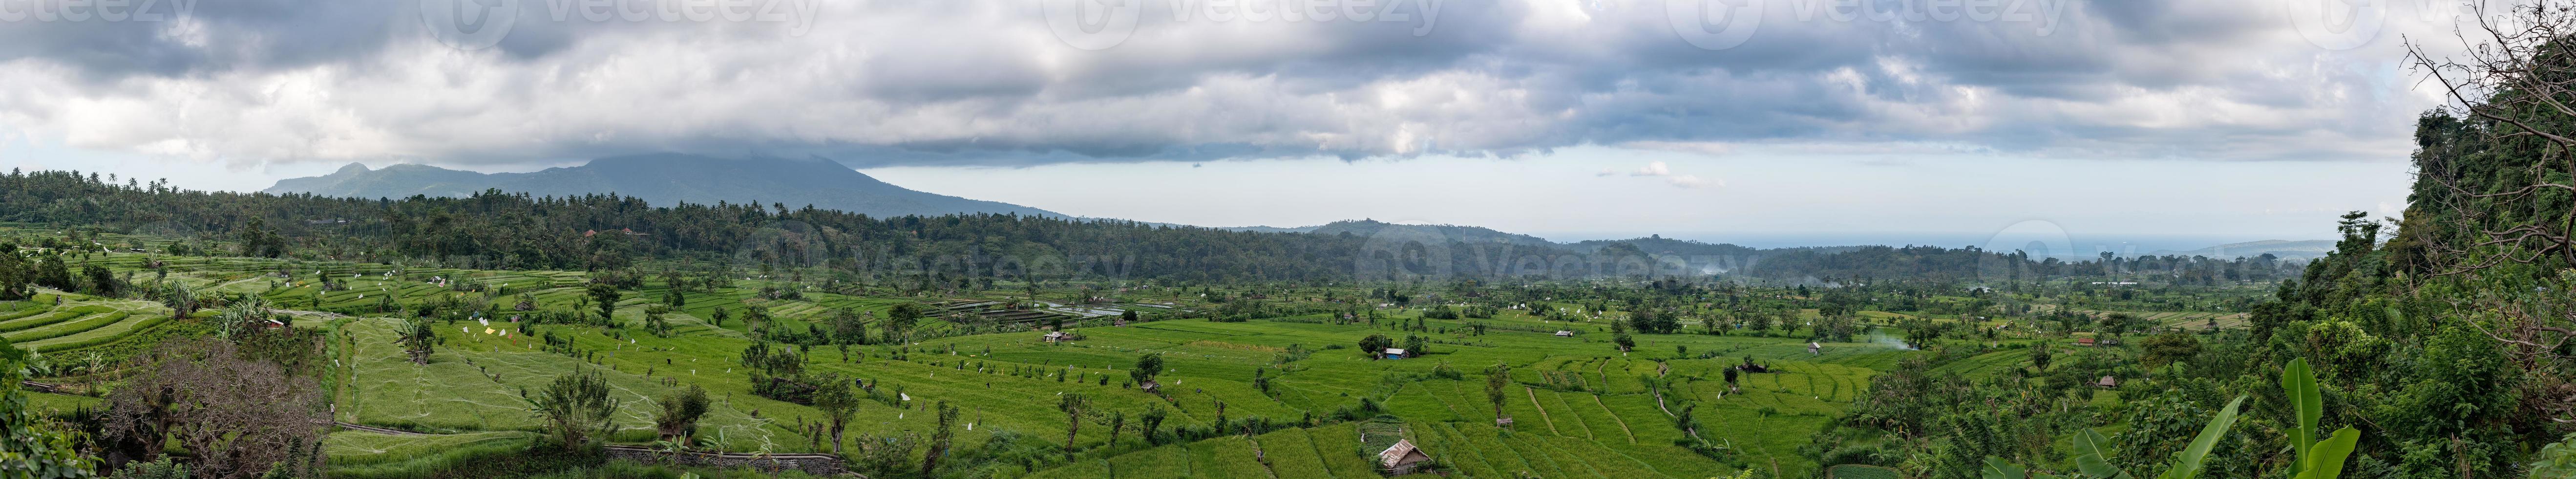 bali rizière immense panorama paysage vue d'affiche photo